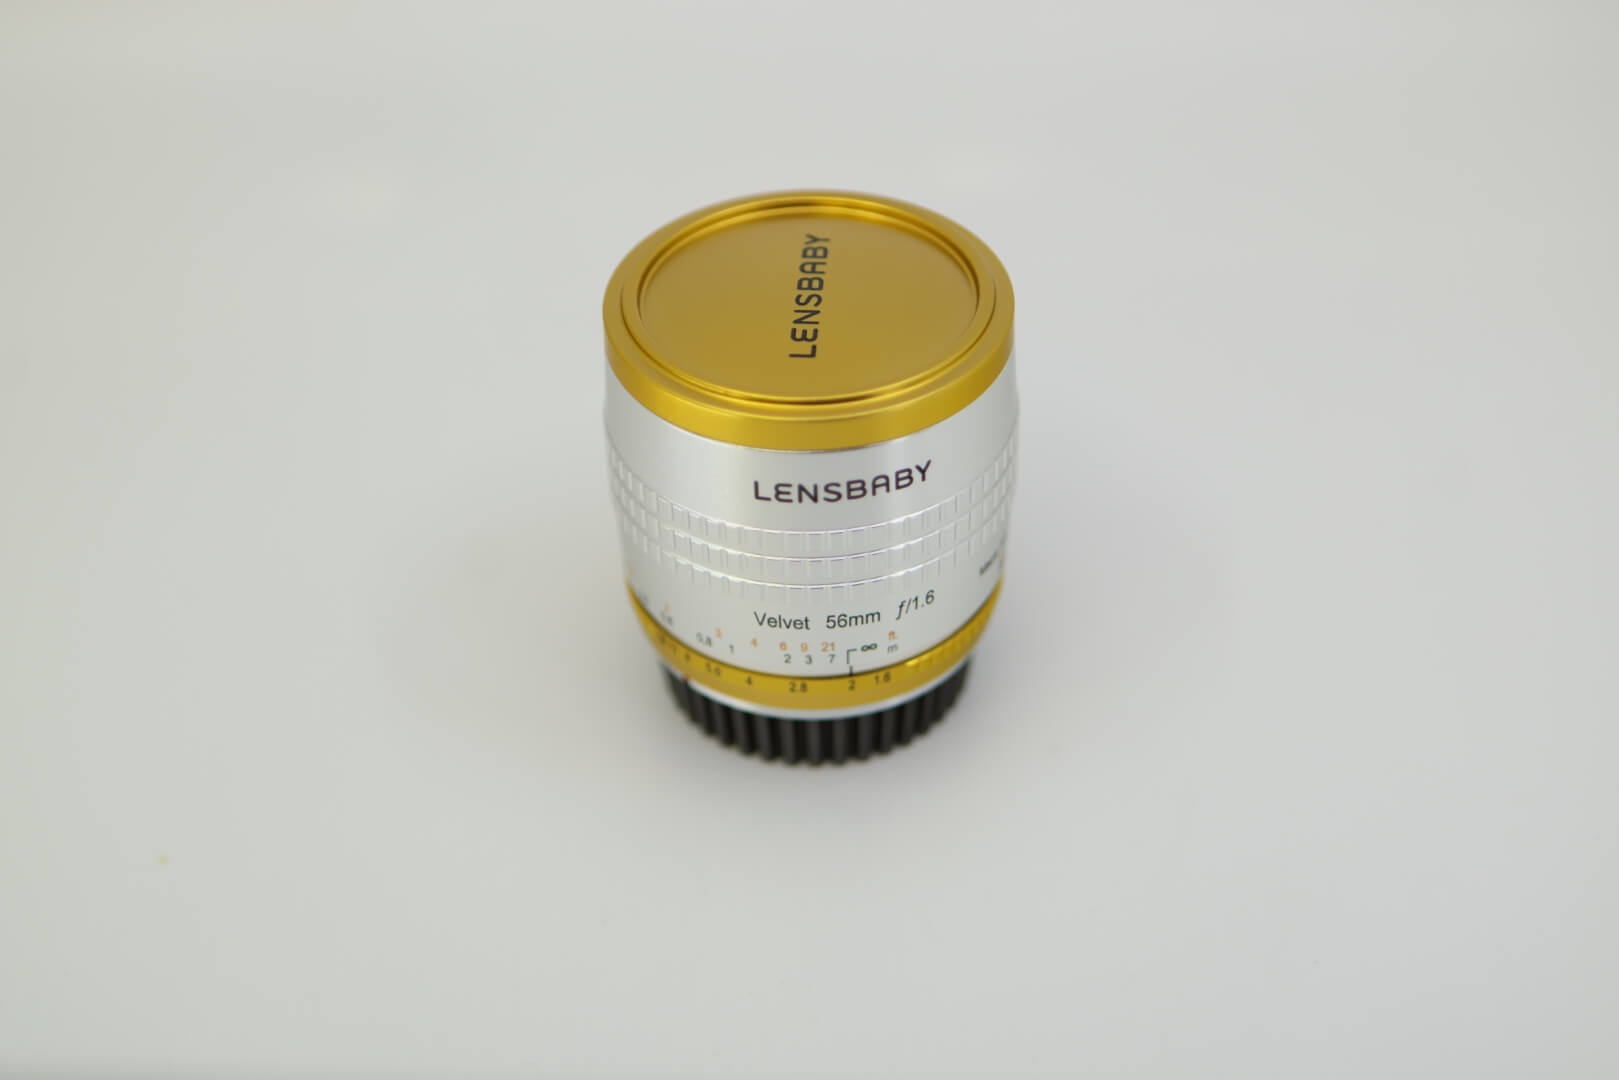 Lens Baby f1.6 Velvet LBV 018102 - Product Image